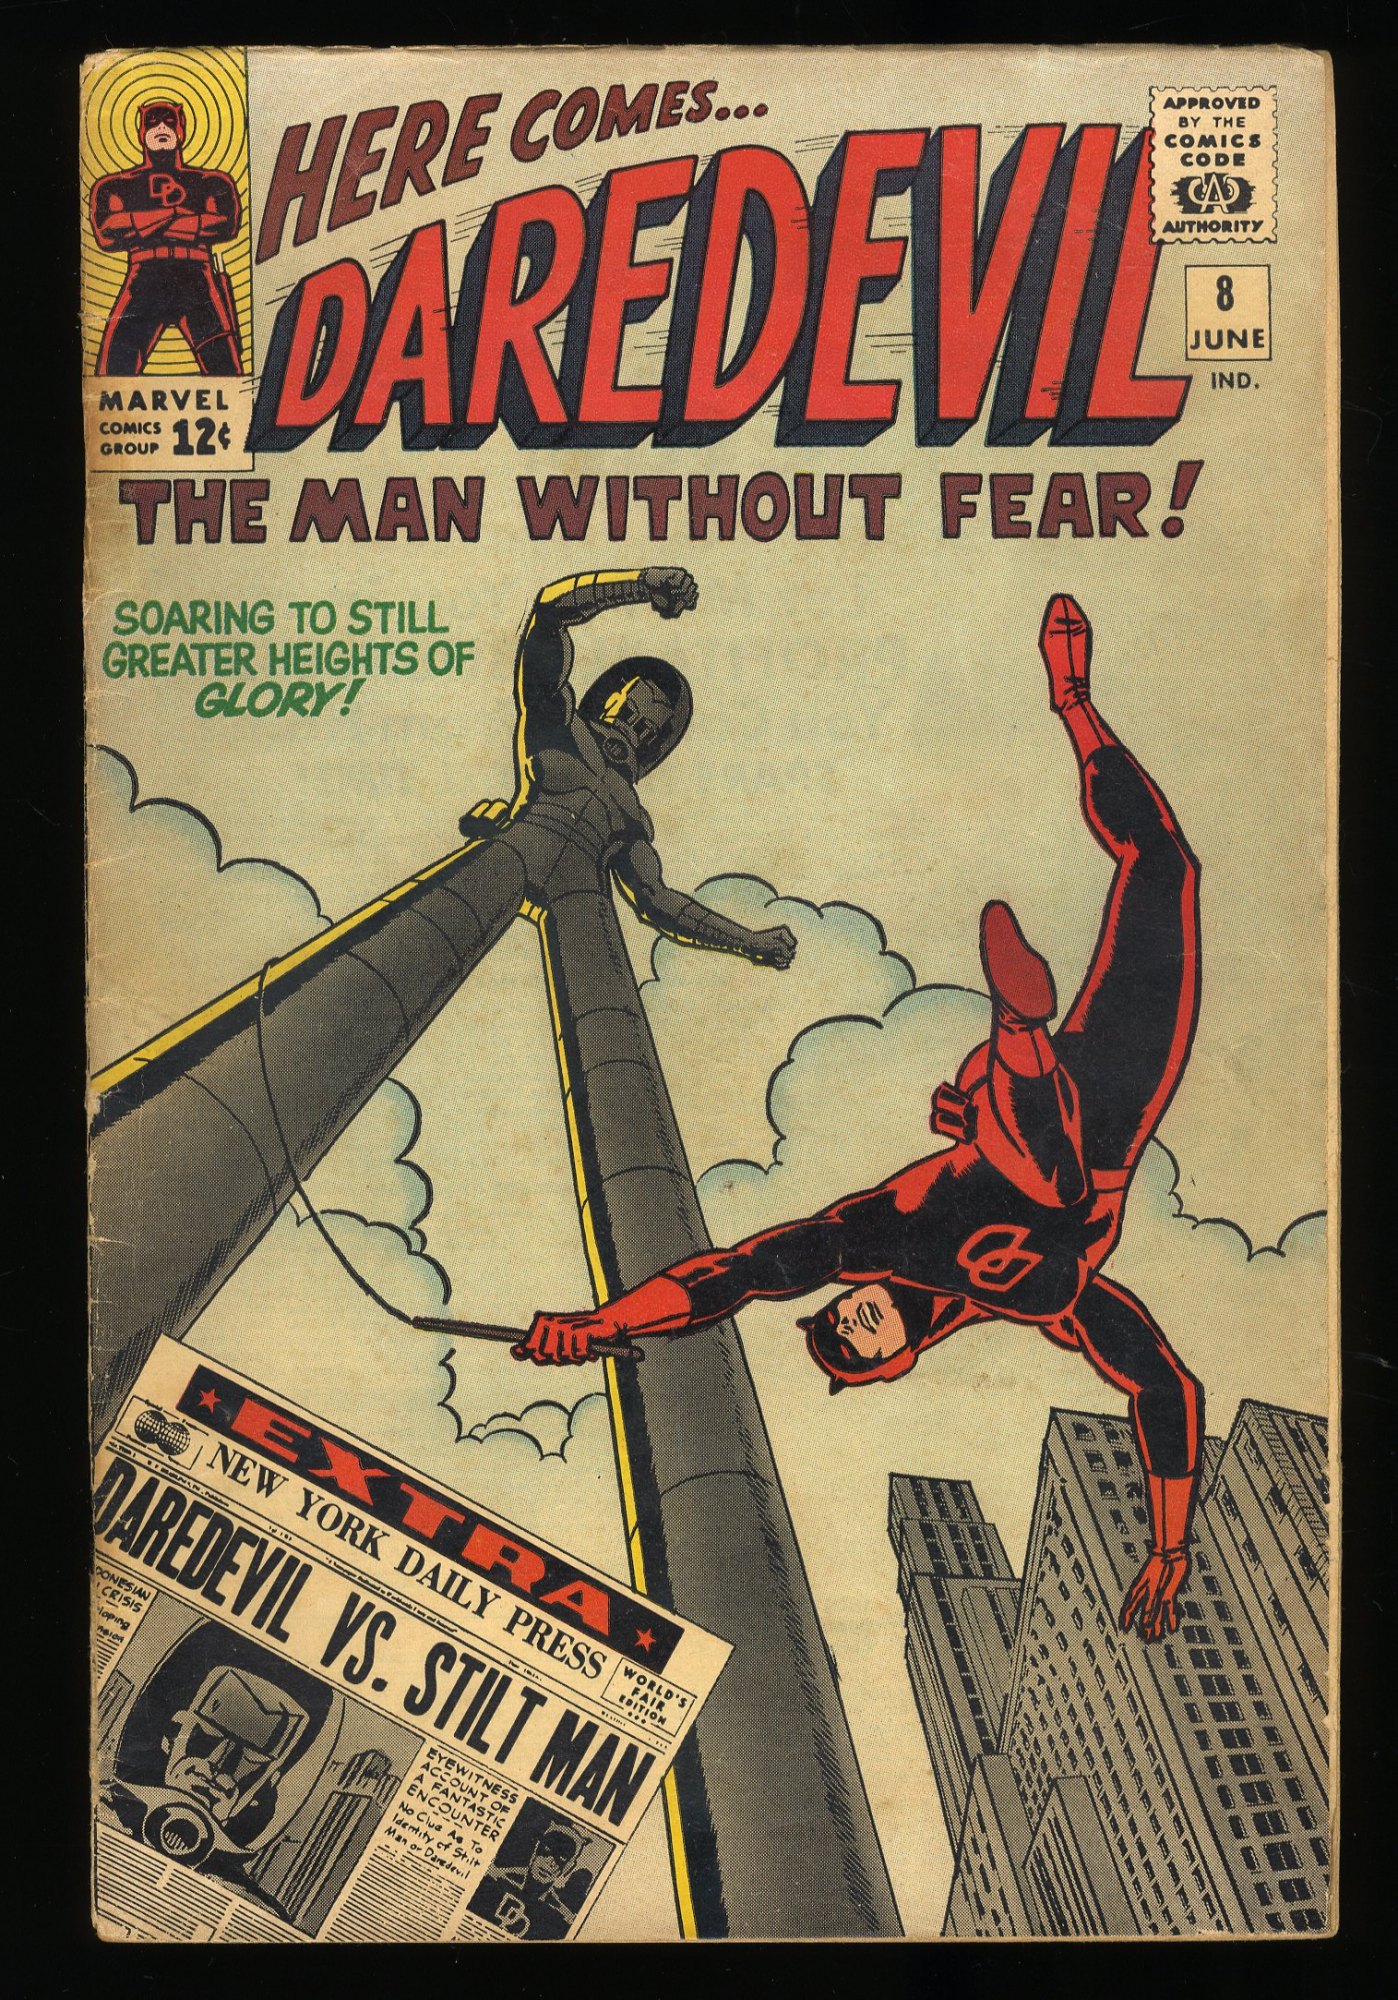 Daredevil #8 VG+ 4.5 1st Appearance of Stilt-Man!